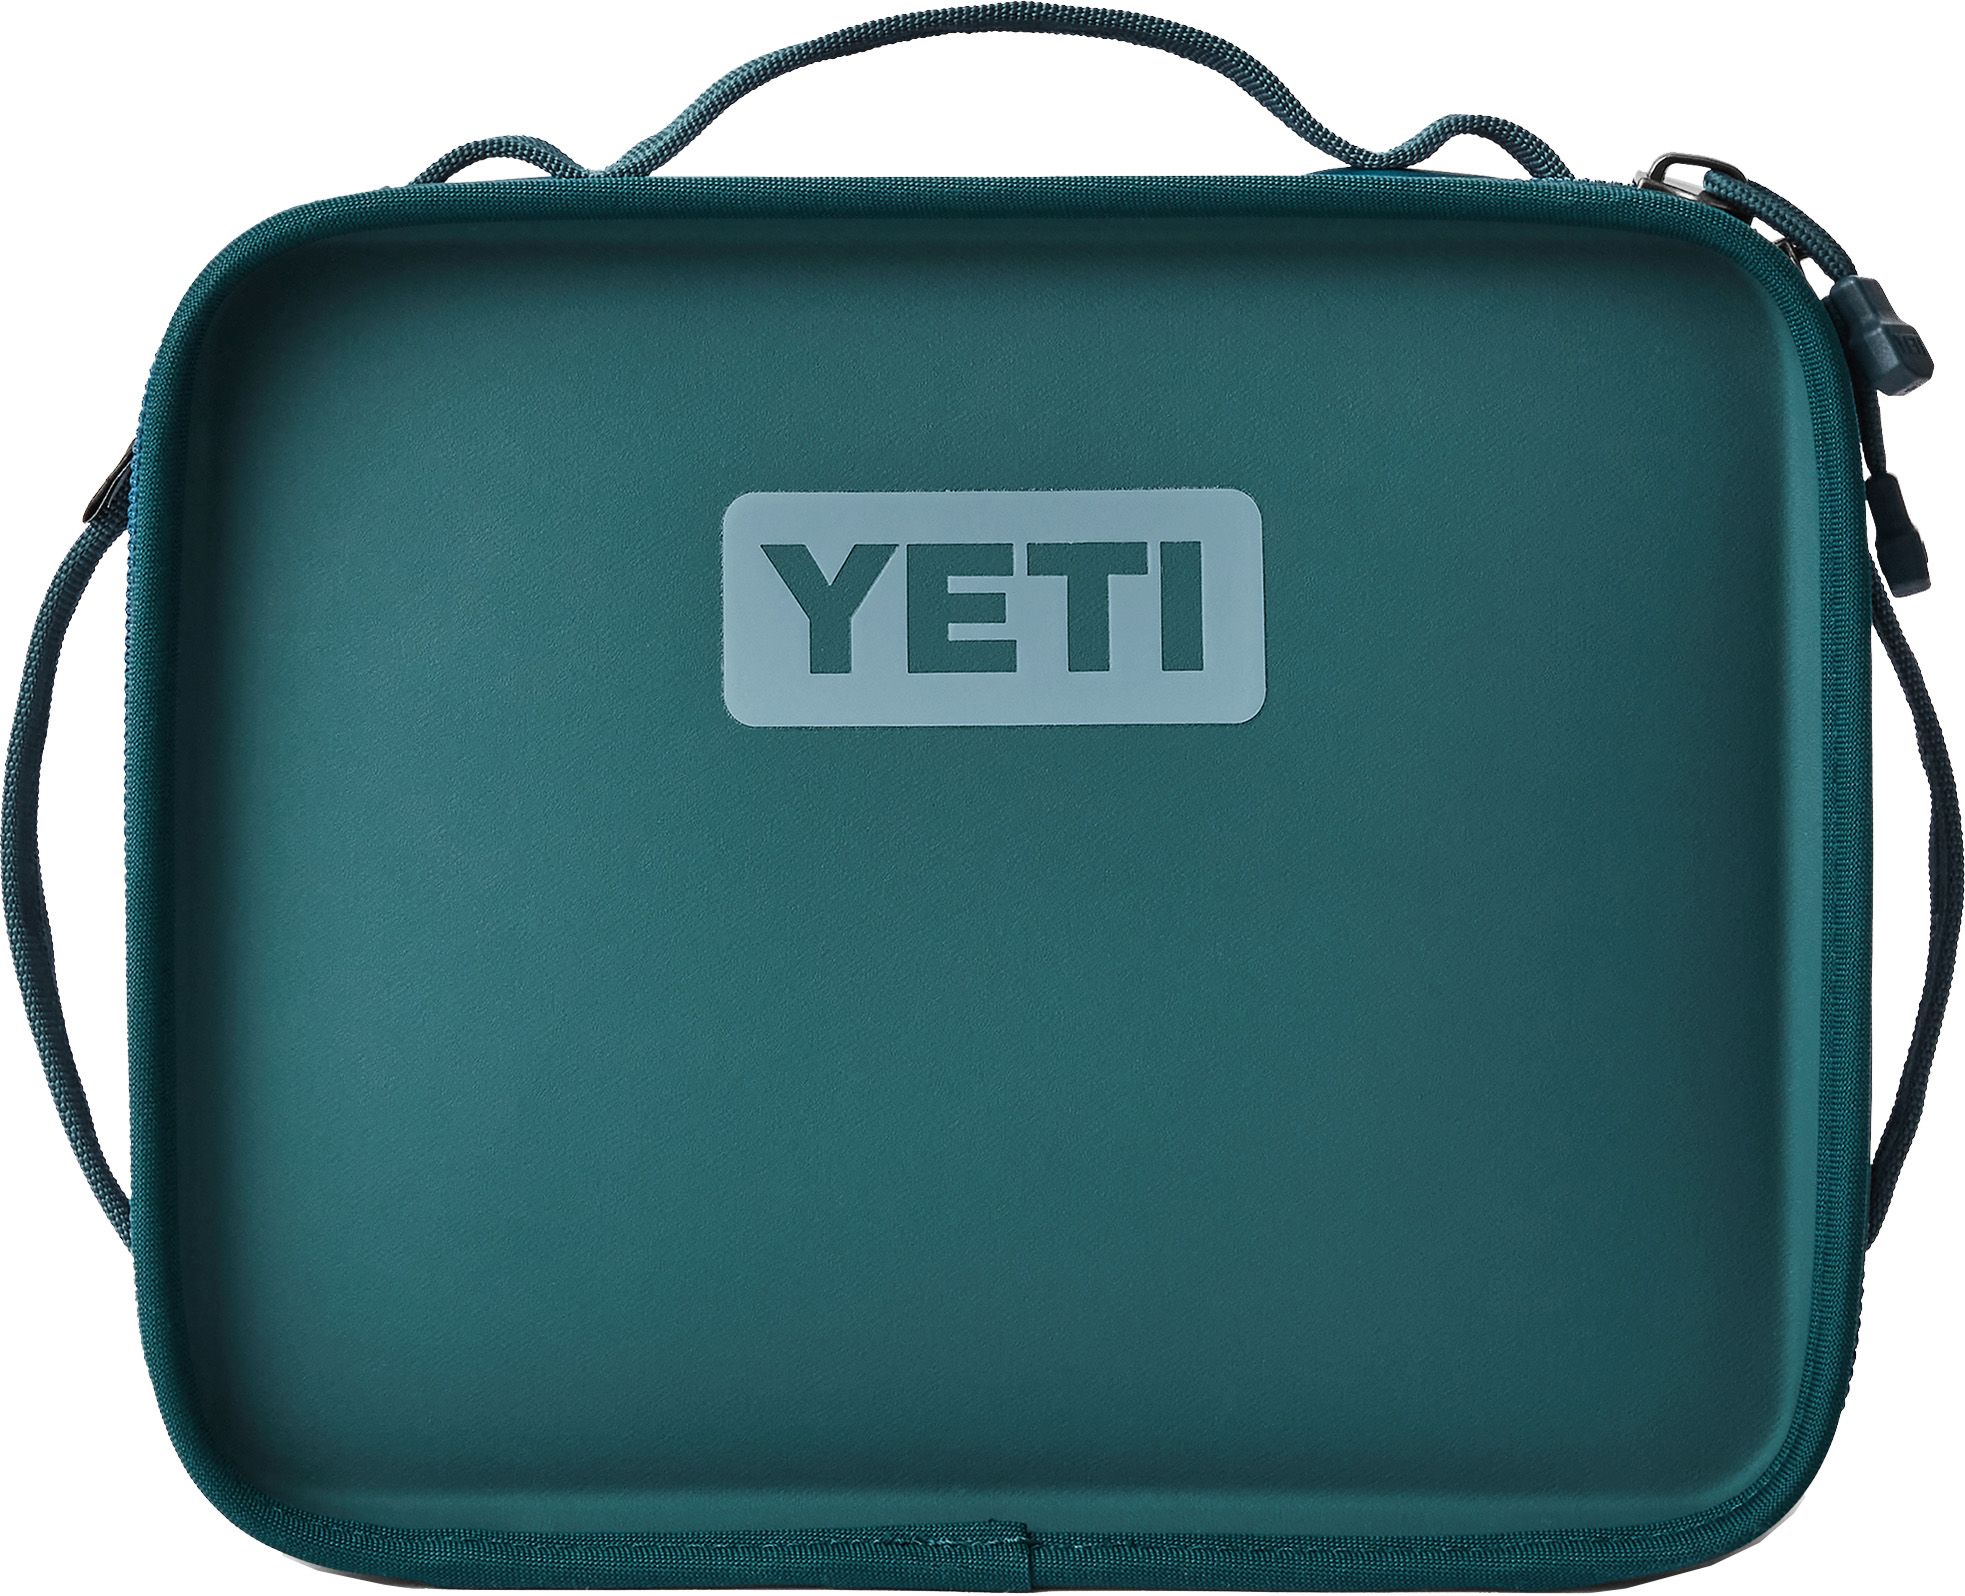 YETI Daytrip Lunch Box